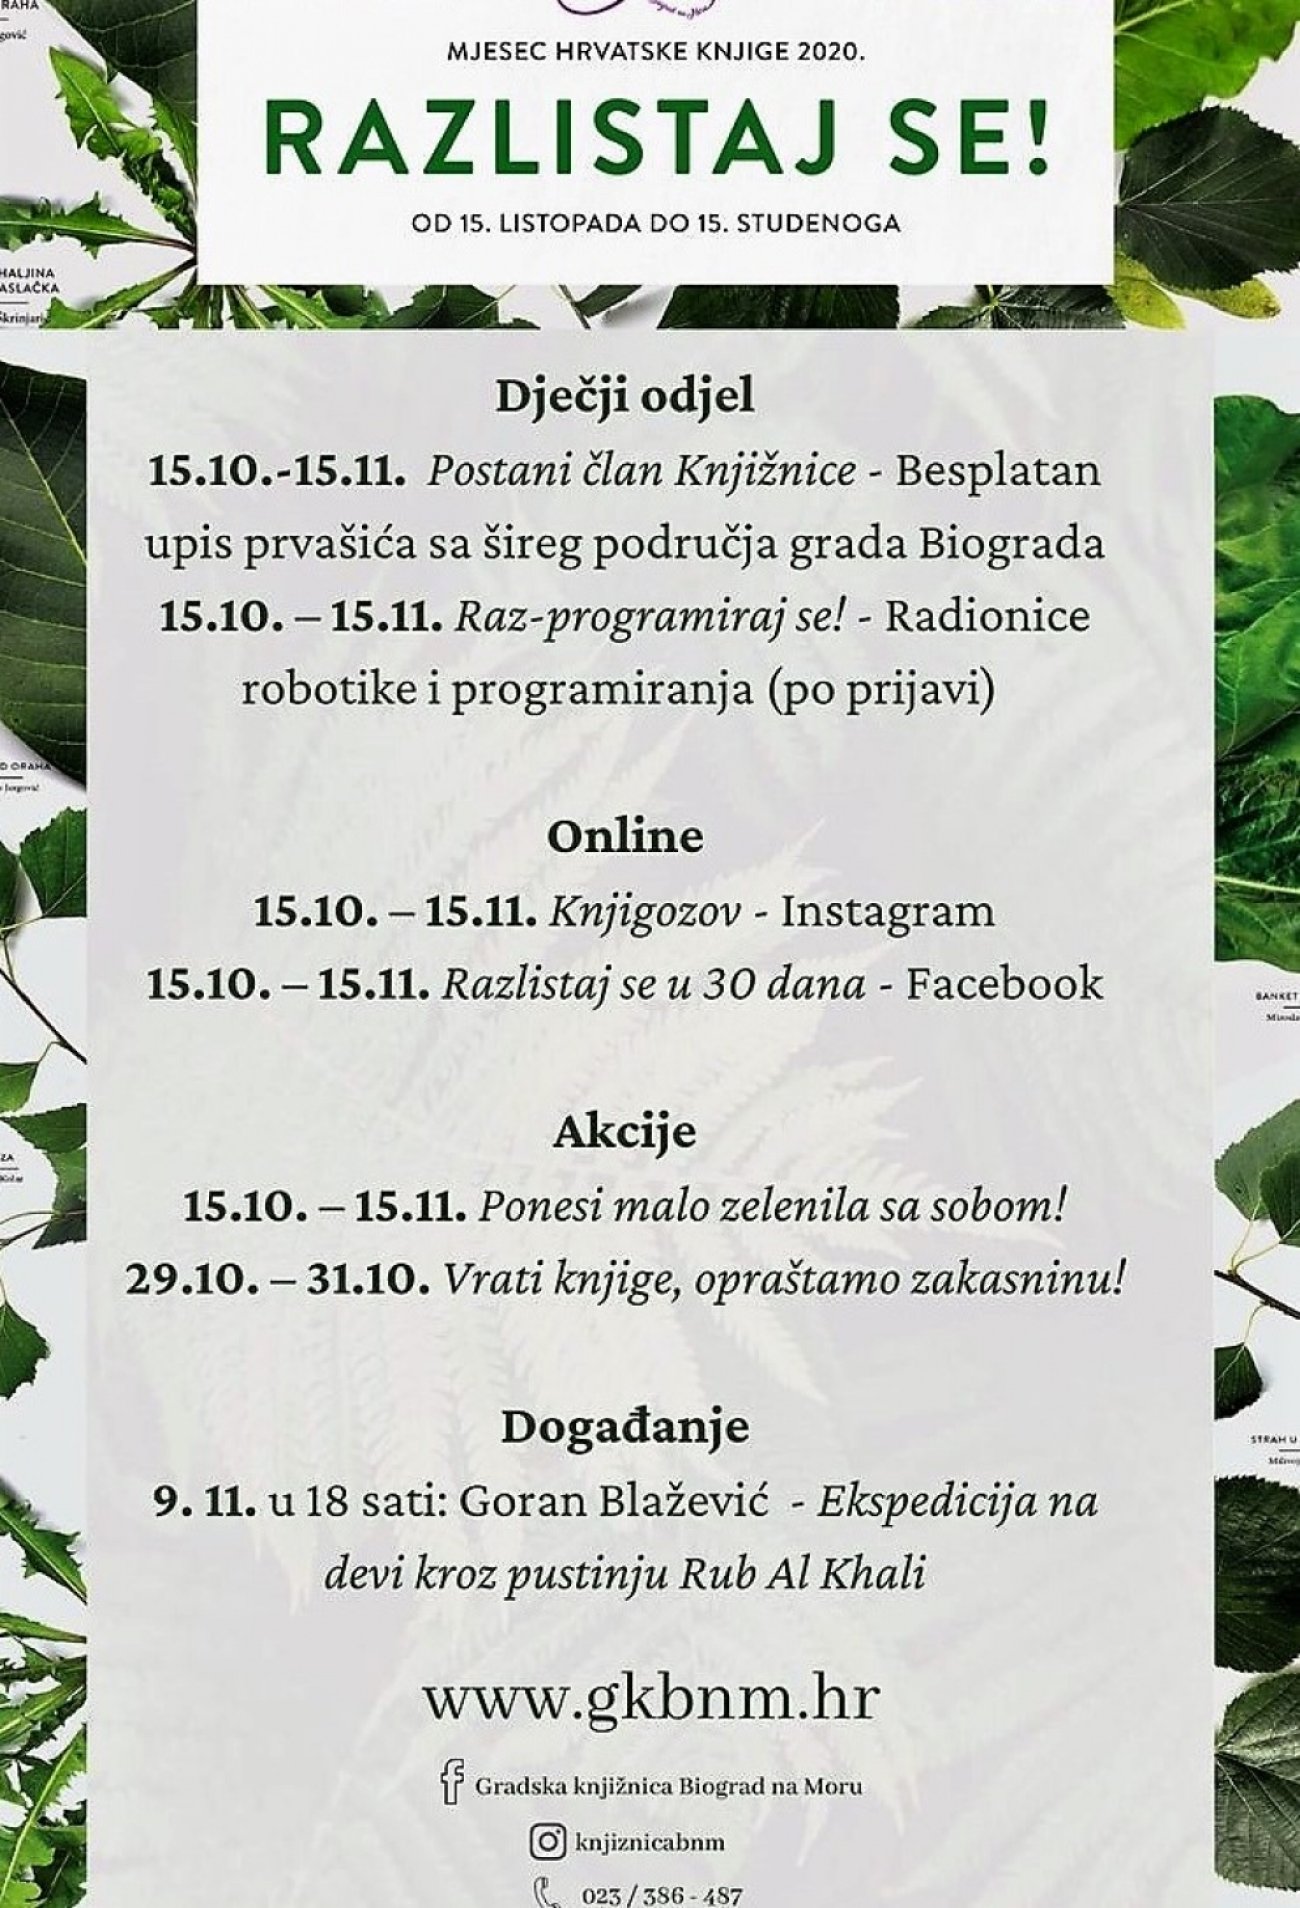 Mjesec hrvatske knjige od 15. listopada do 15. studenog